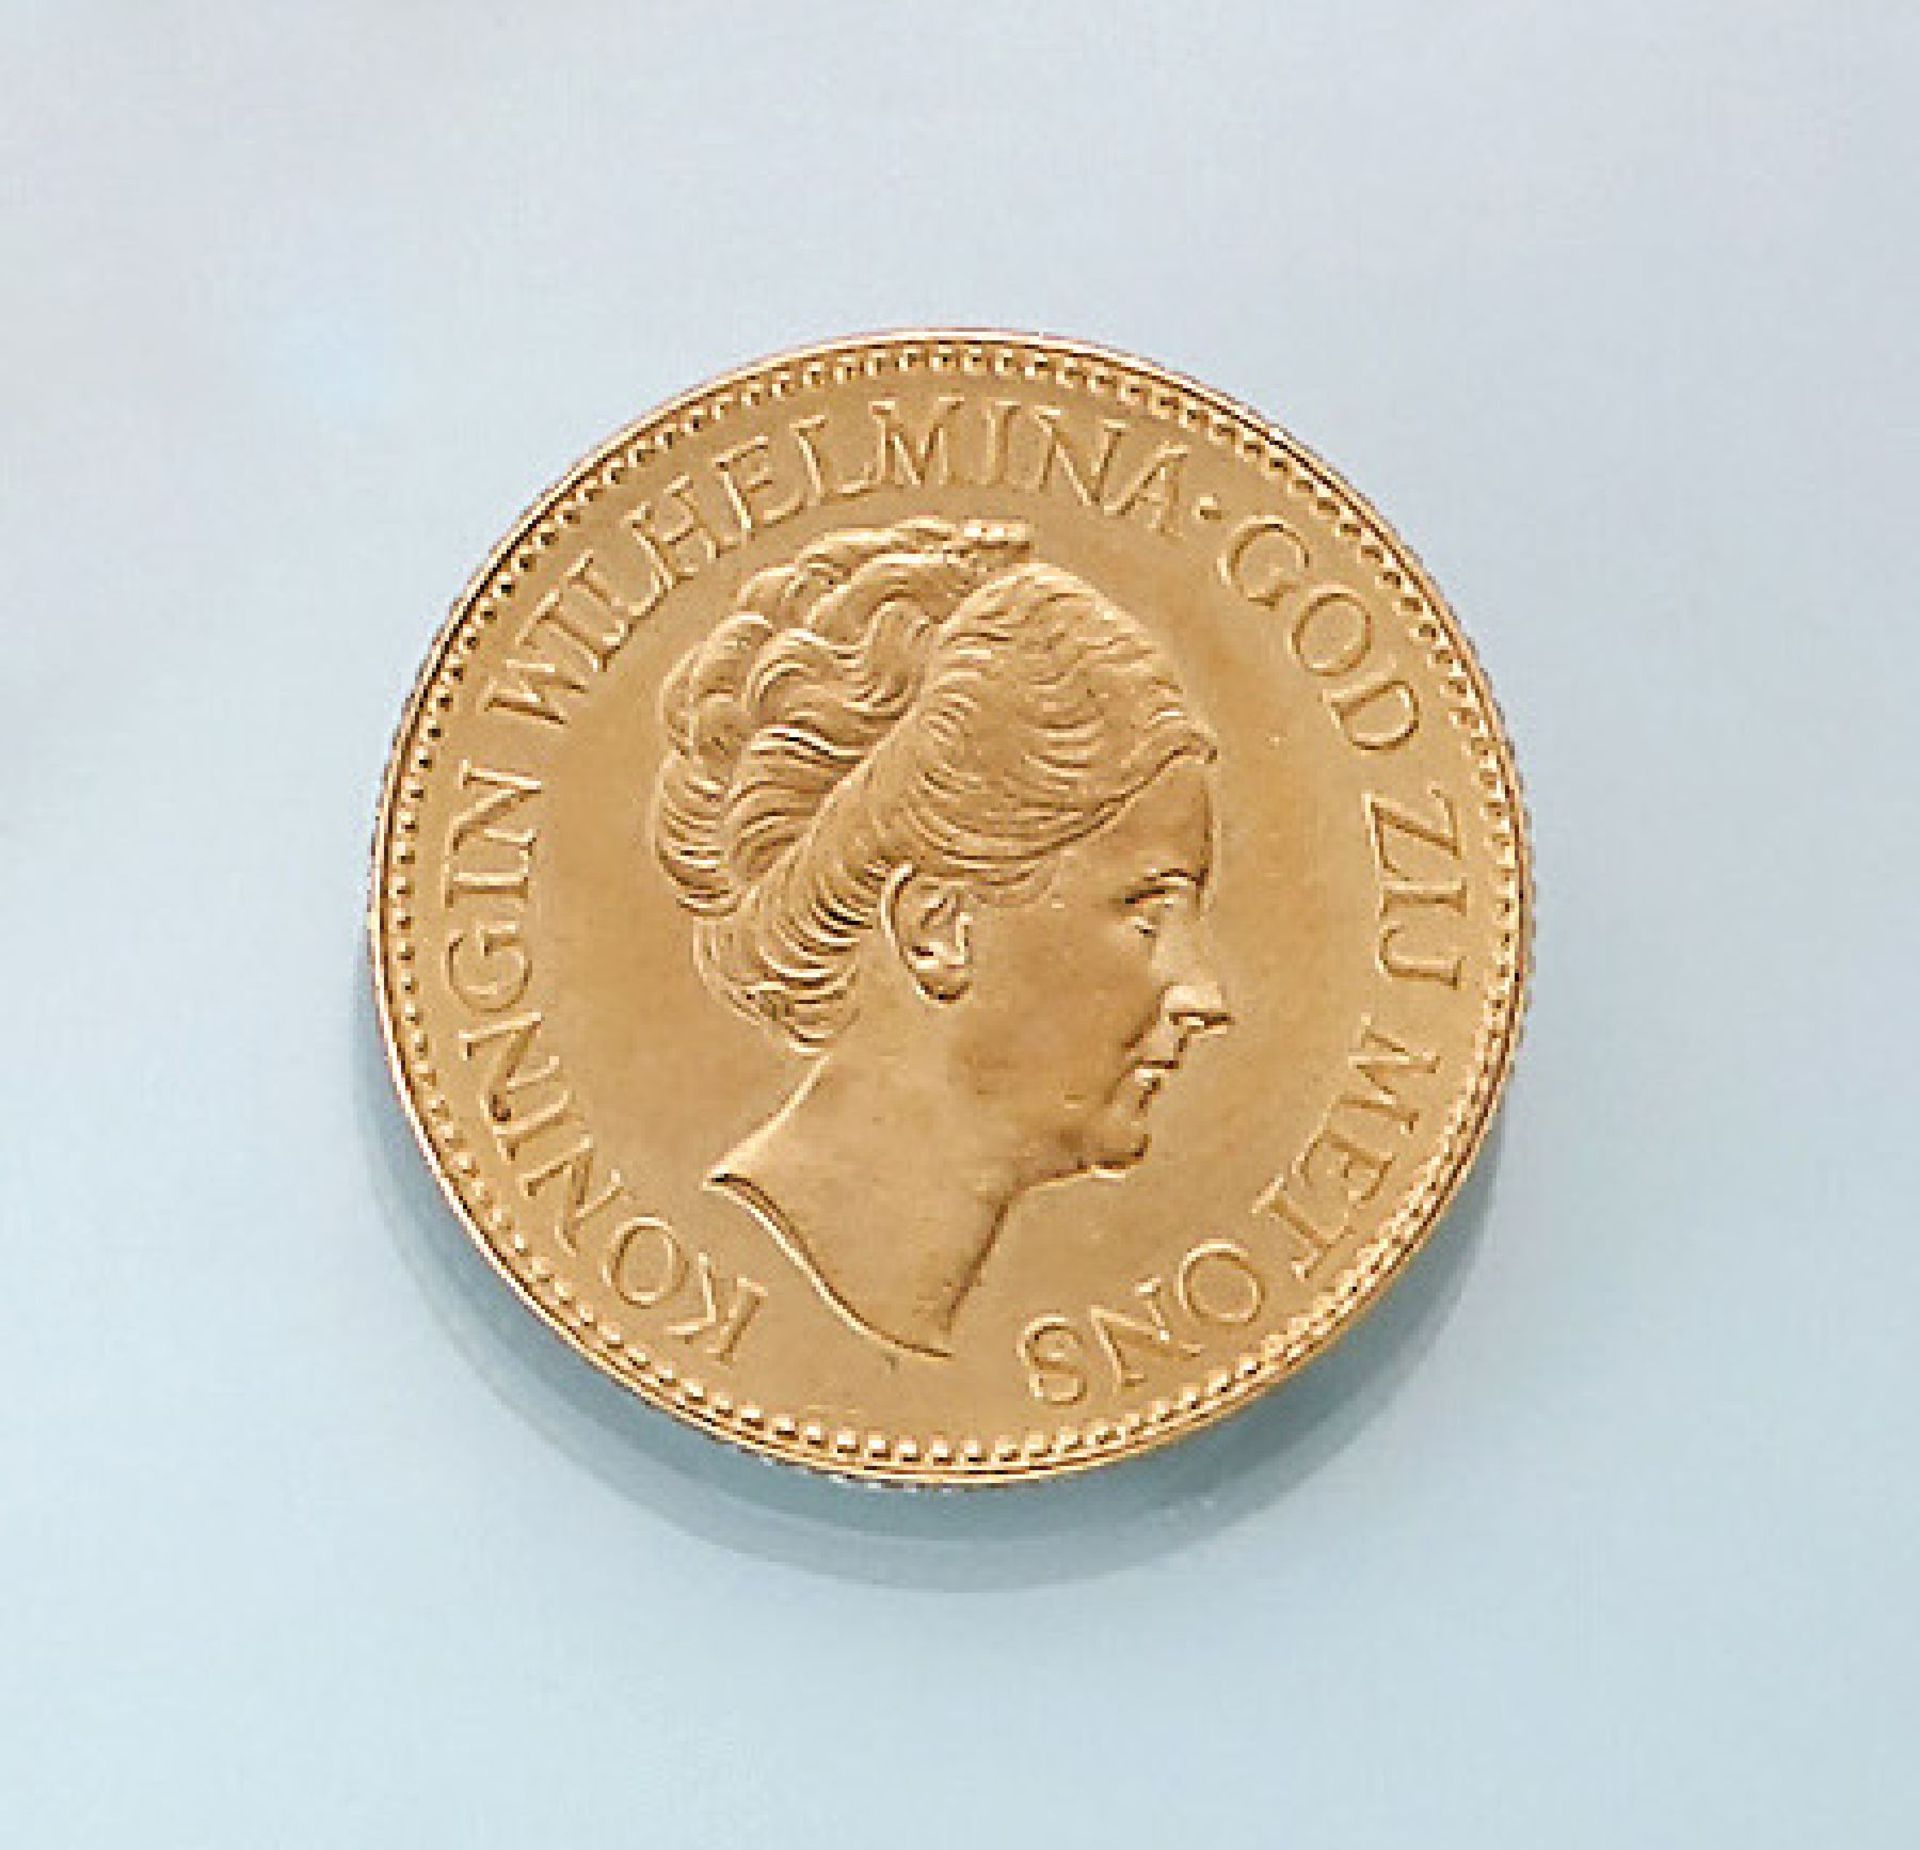 Goldmünze, 10 Gulden, Niederlande, 1932, Koningin Wilhelmina, God zij met ons, Koningrijk der